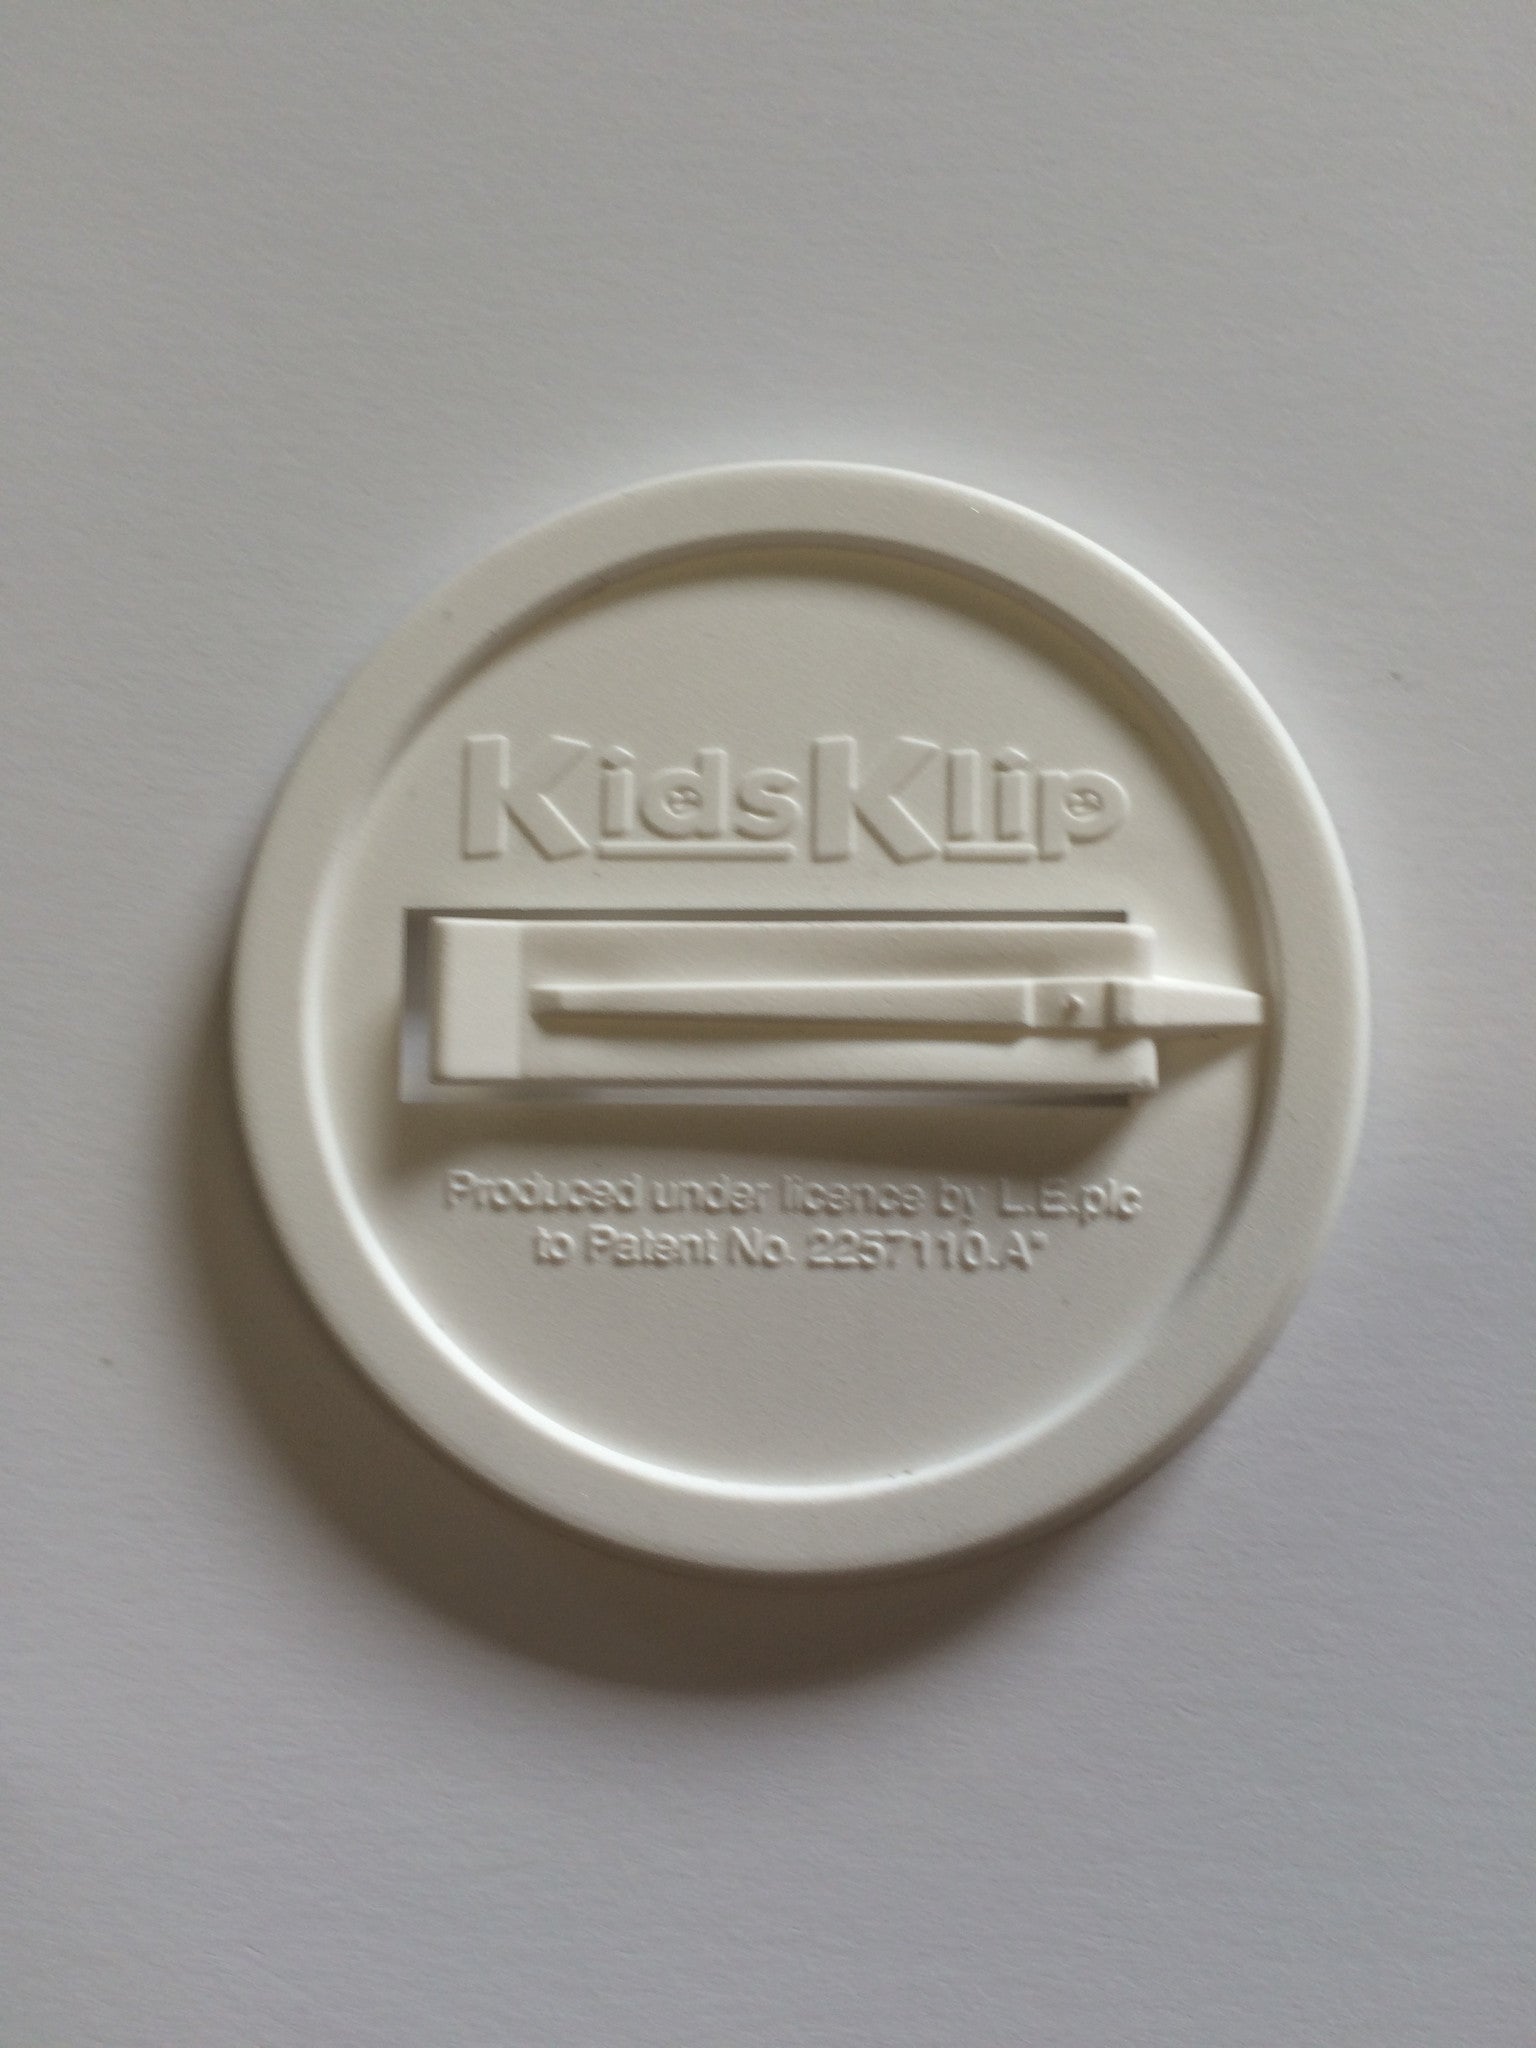 55mm Badge KidsKlip backs - Spares